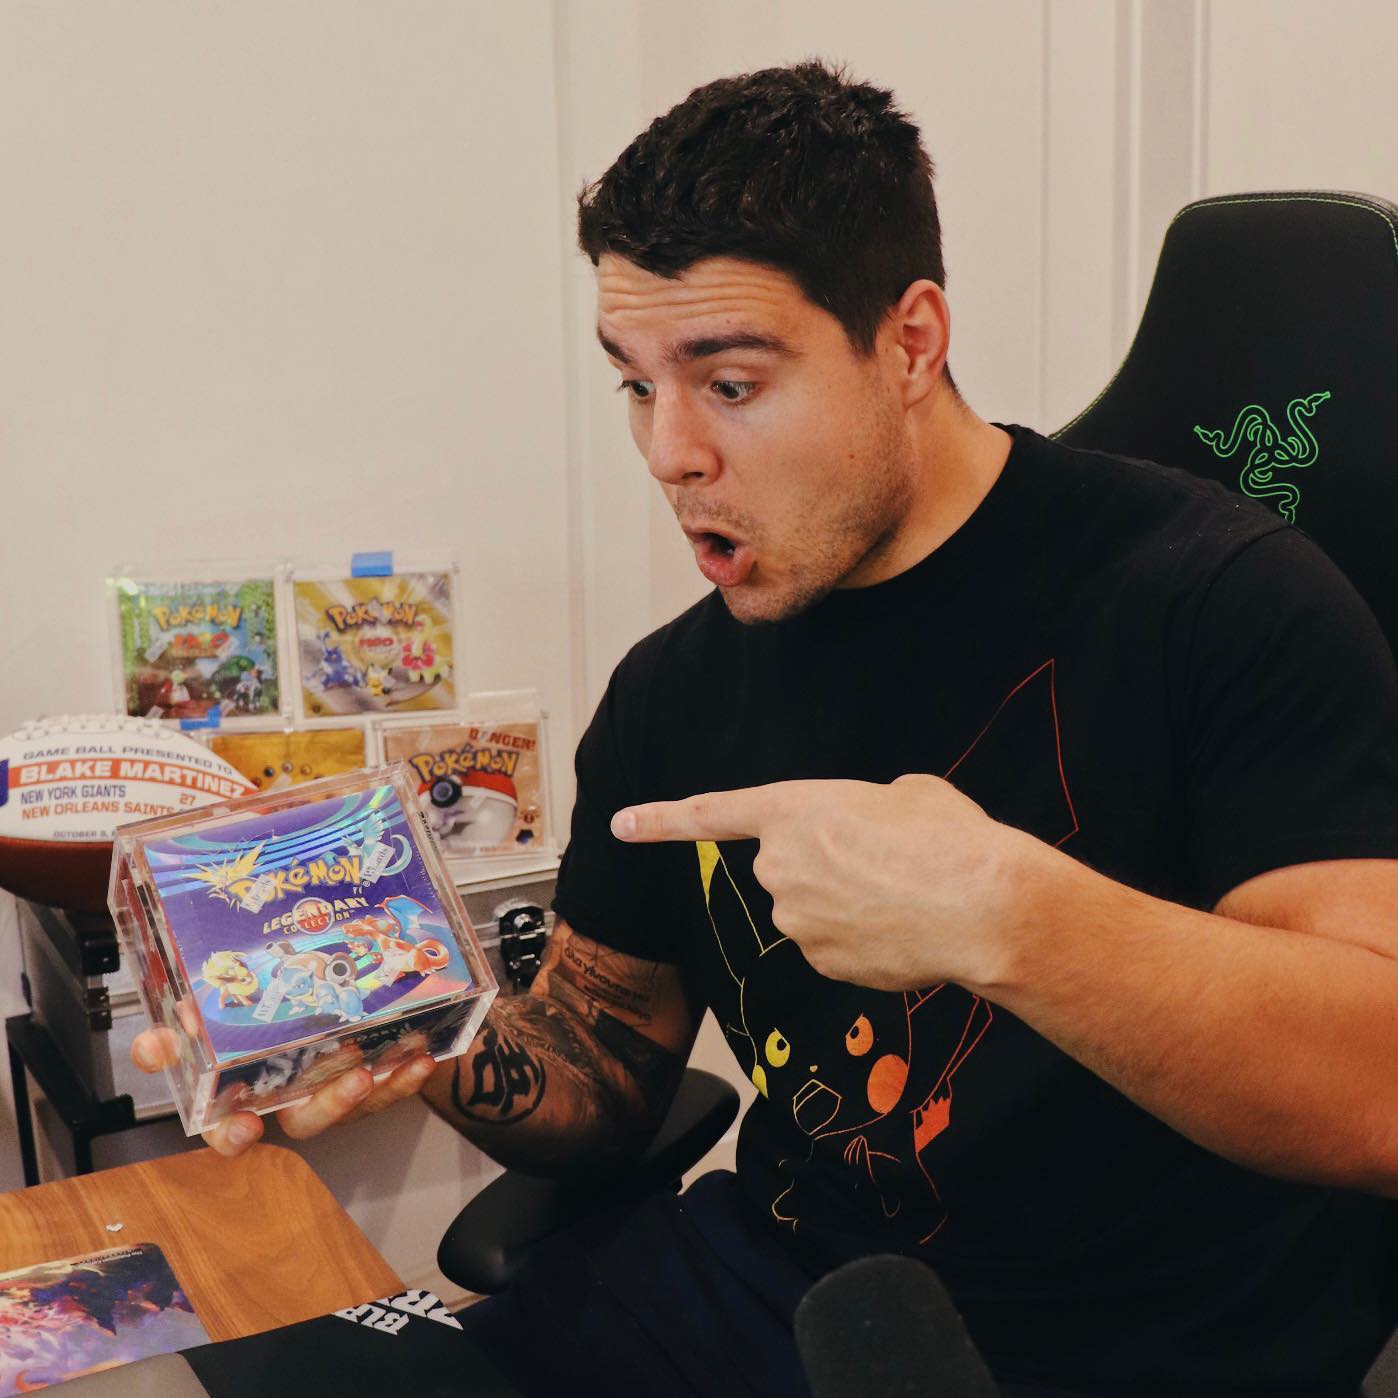 Blake Martinez With Pokemon Packs In His Hand